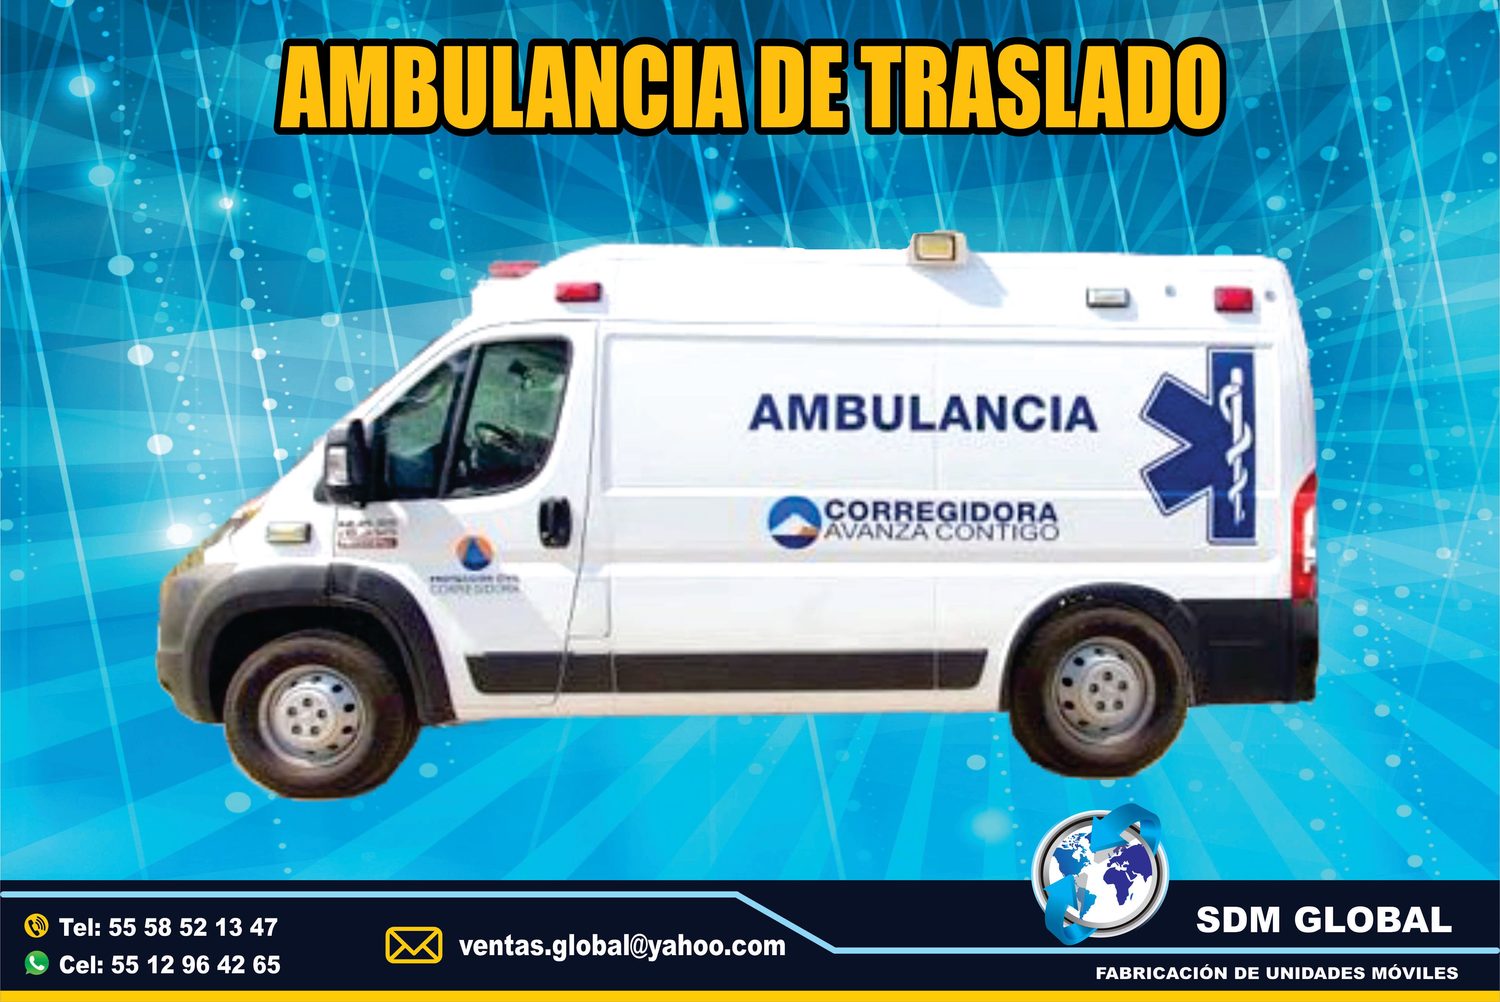 <span style="font-weight: bold;">Fabrica de Ambulancis de Traslado en Mexico</span><br>